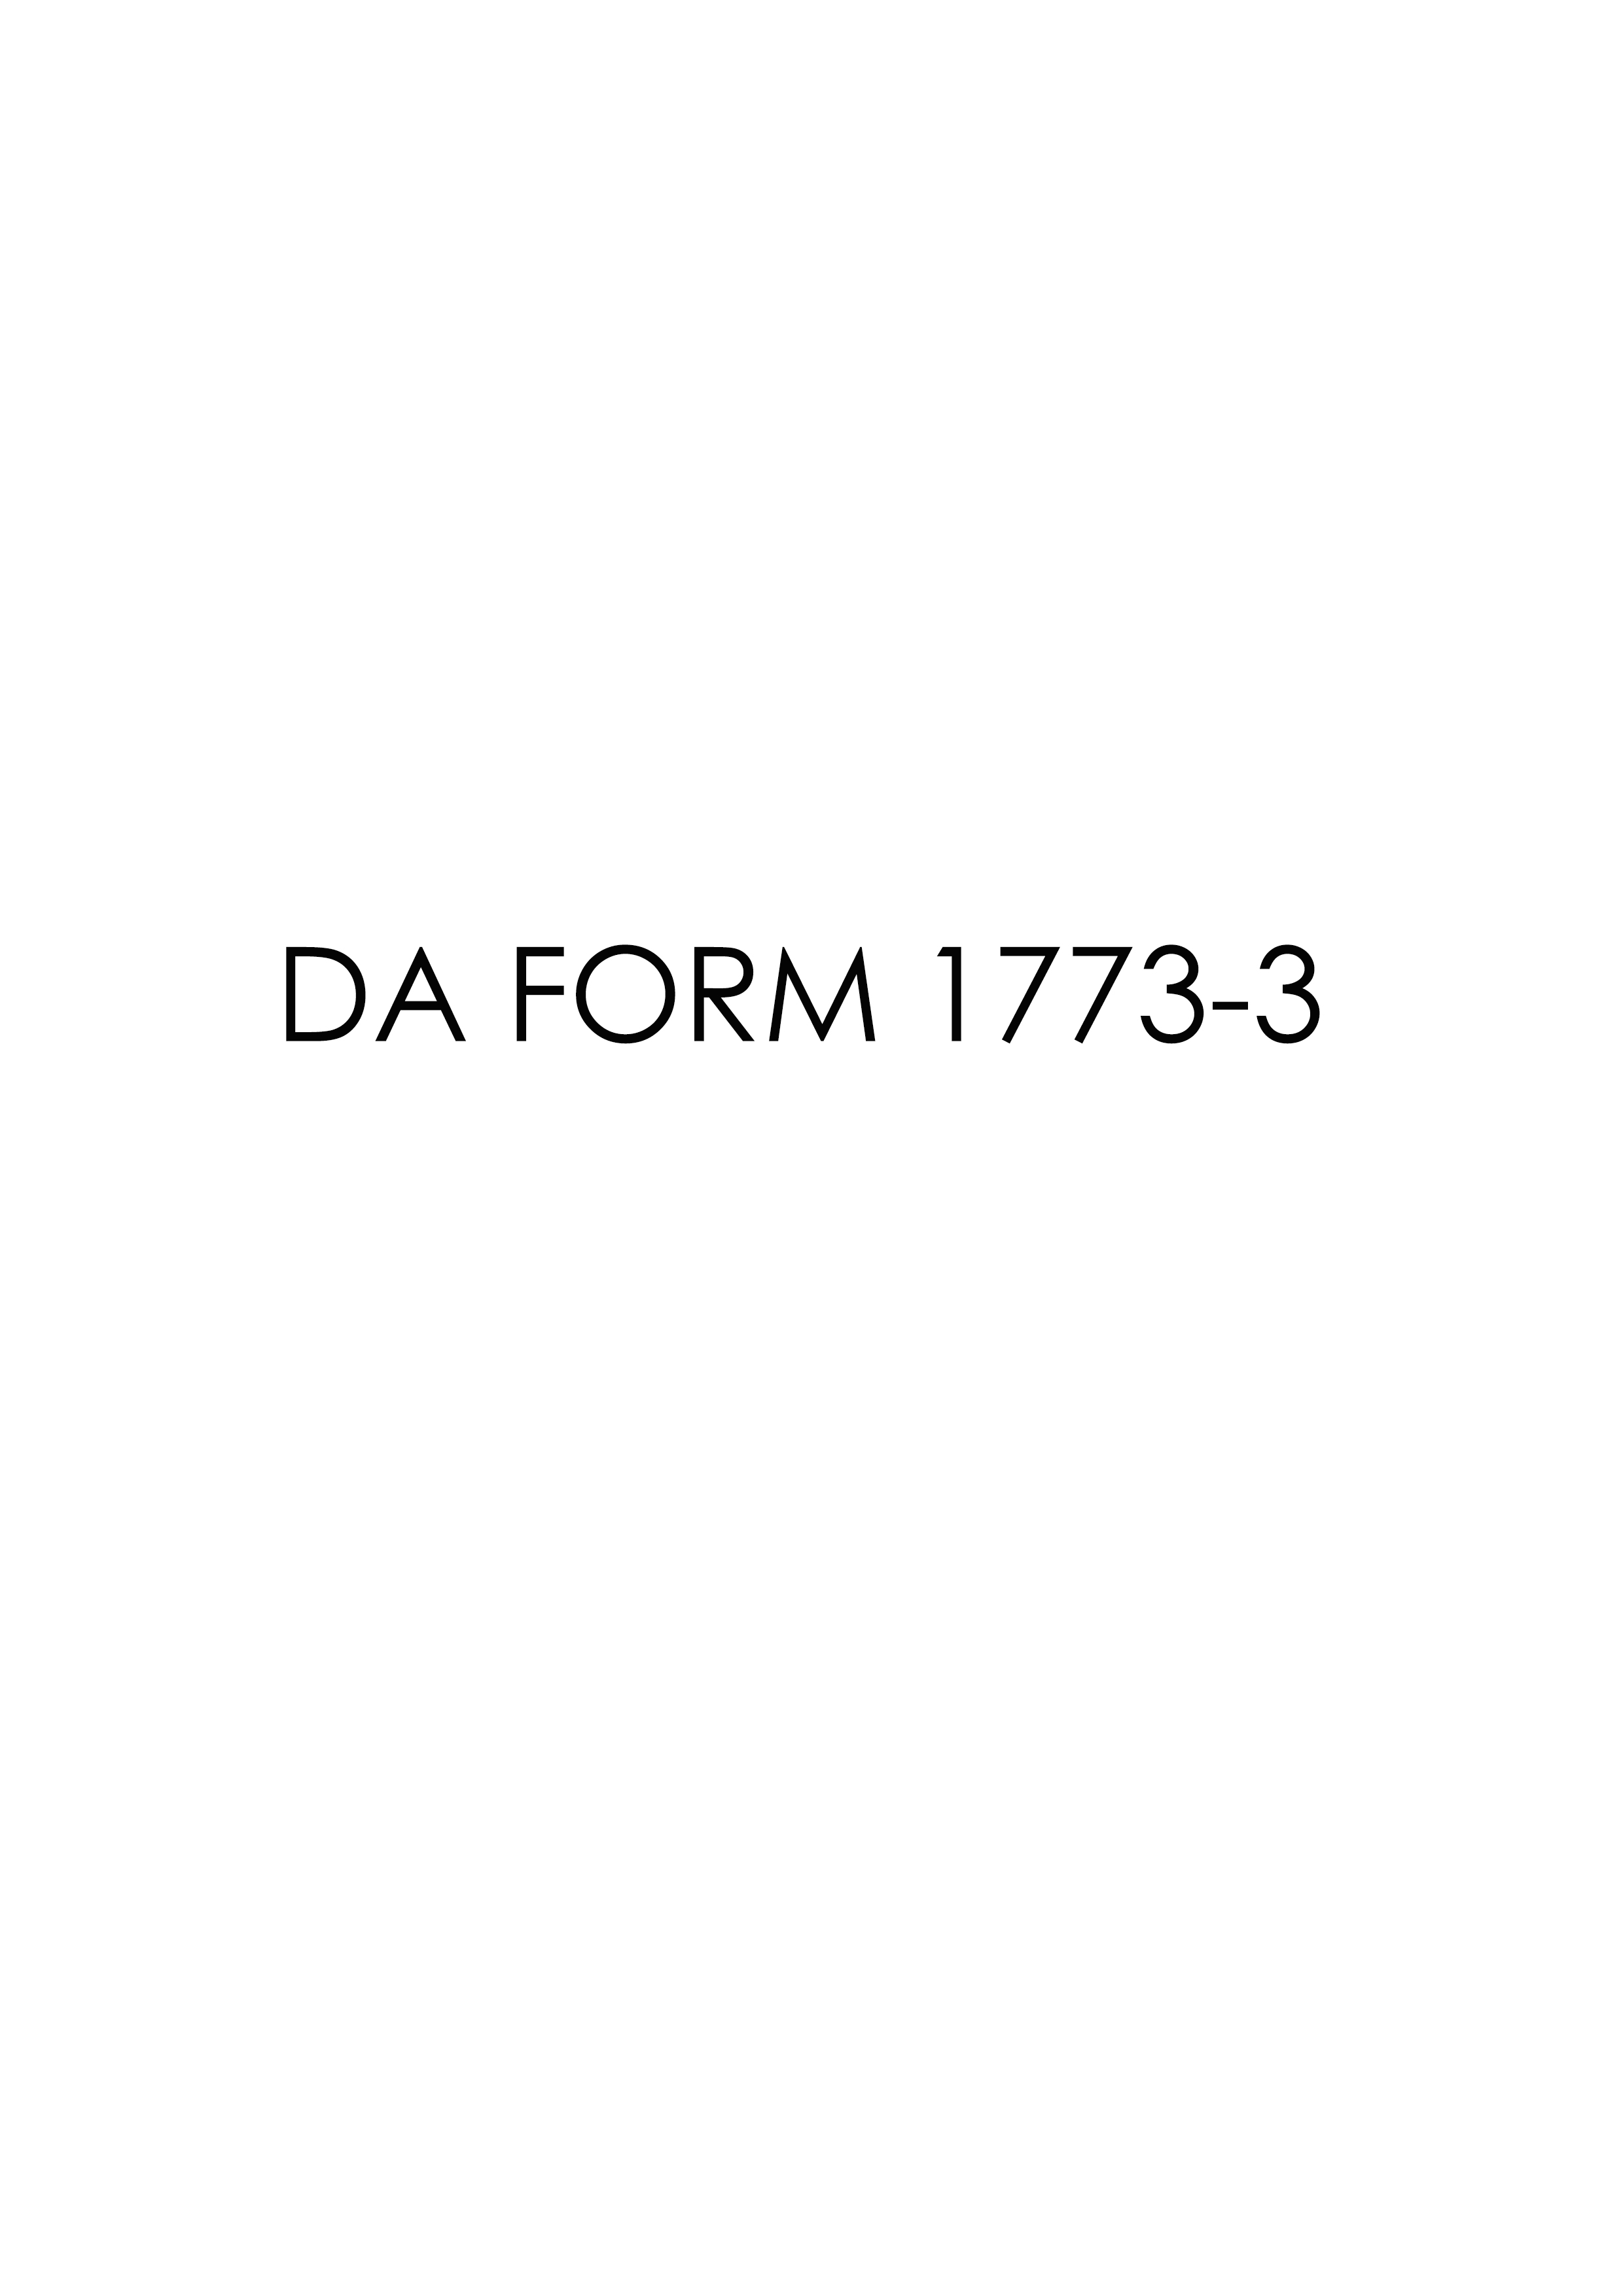 Download da 1773-3